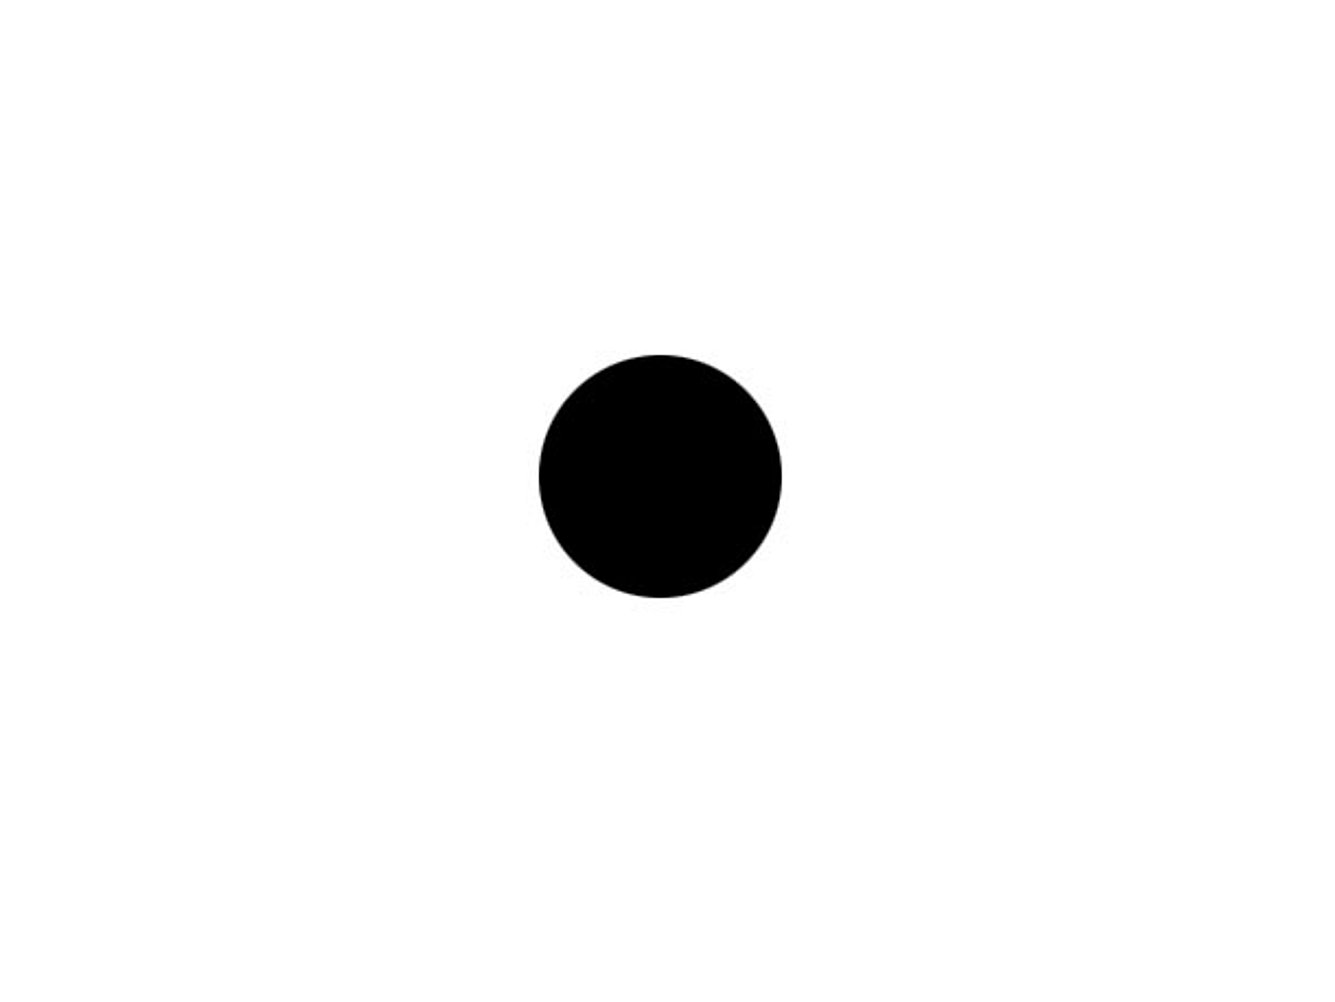 Der schwarze Punkt steht für die Schattenseiten unseres Lebens - denen wir oft zu viel Beachtung schenken.